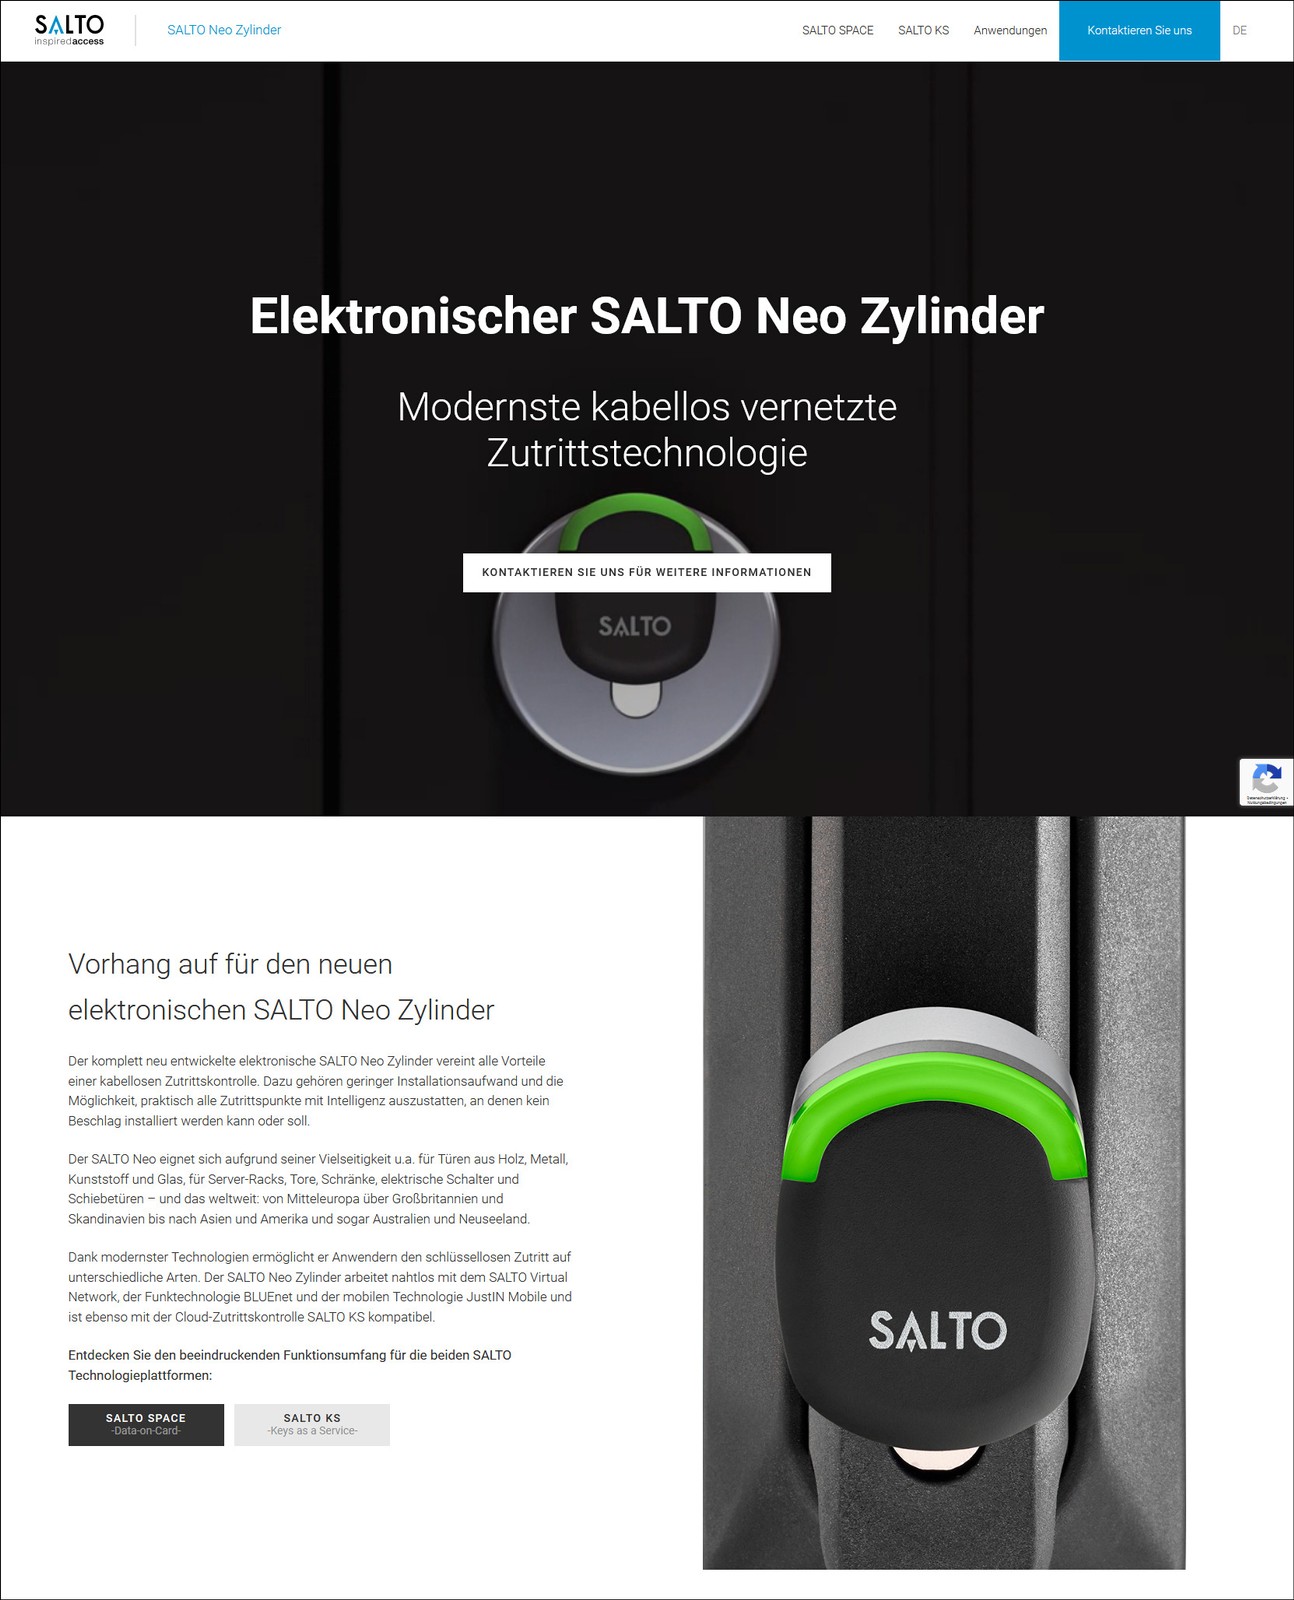 Der Salto Neo Zylinder hat eine eigene Microsite mit vielen nützlichen Informationen bekommen.